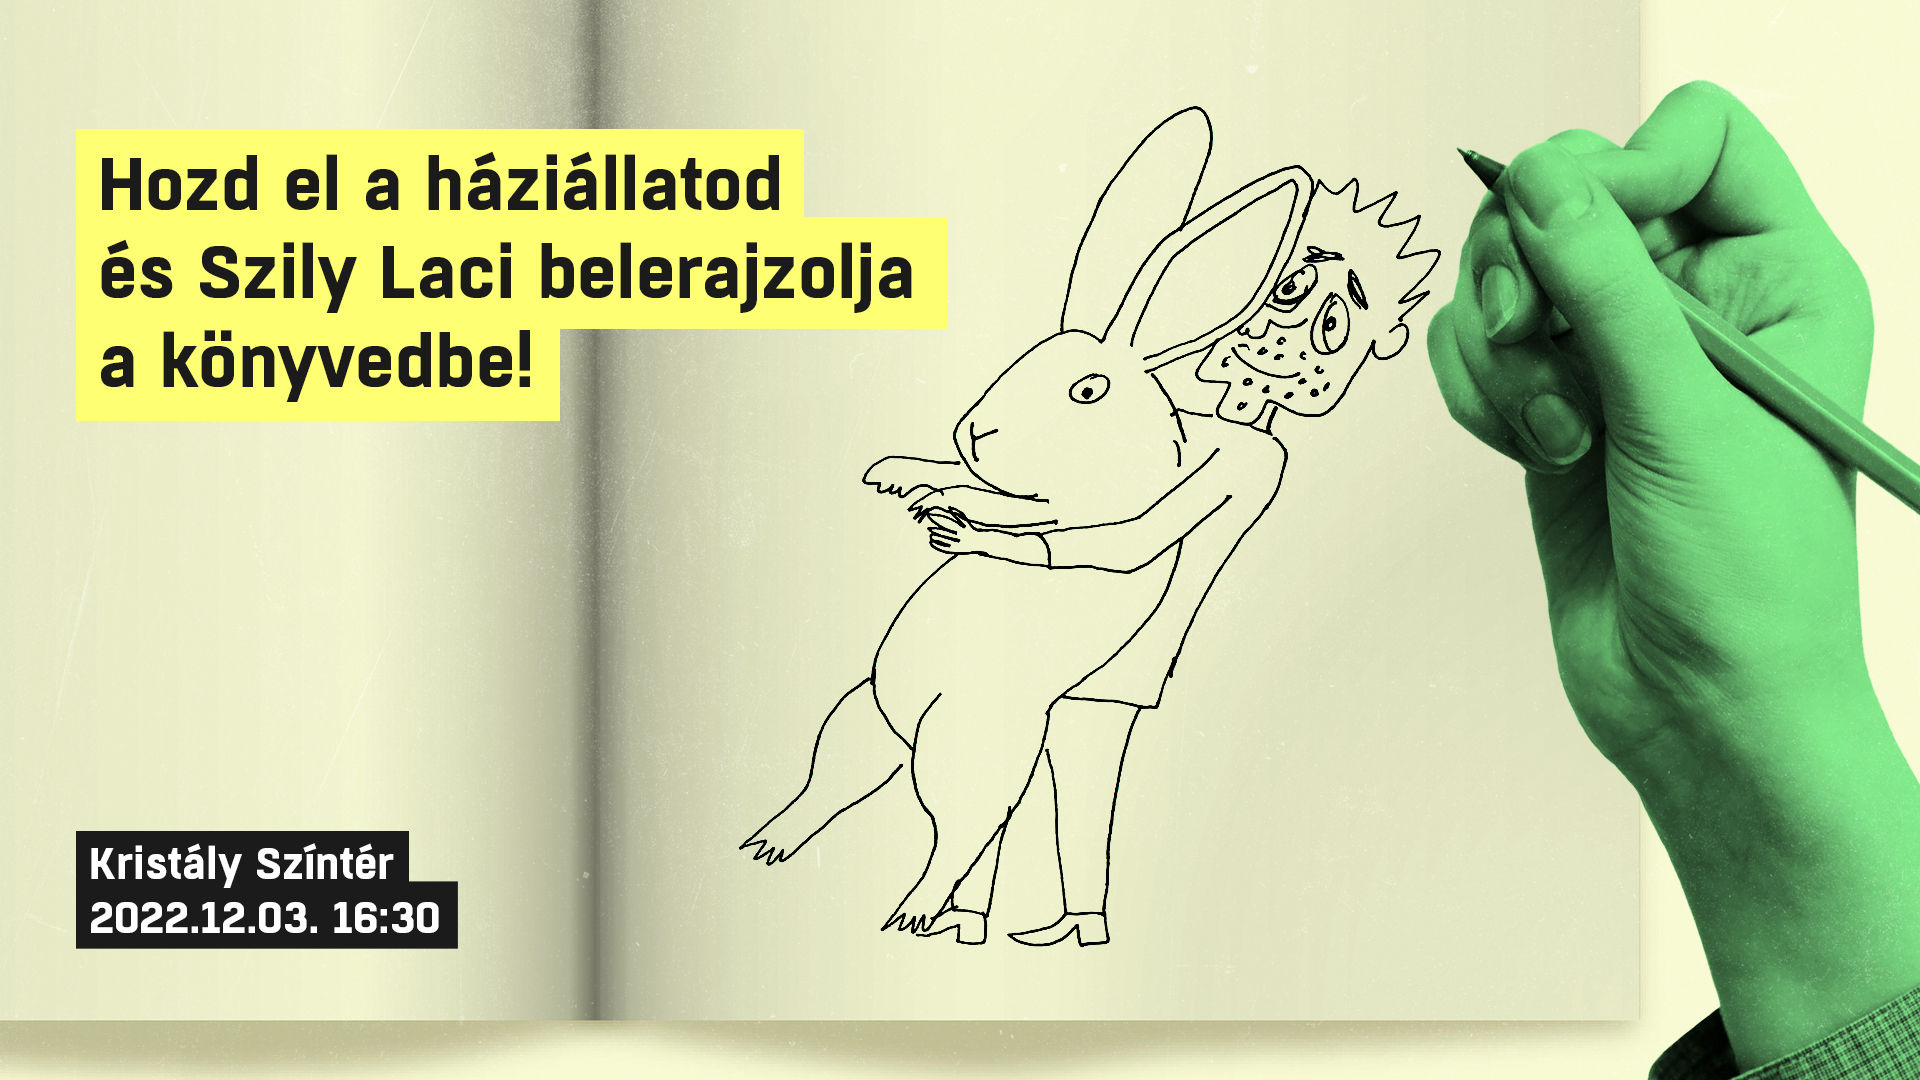 Állatbíróság: Hozd el a háziállatodat és Szily László belerajzolja a könyvedbe!